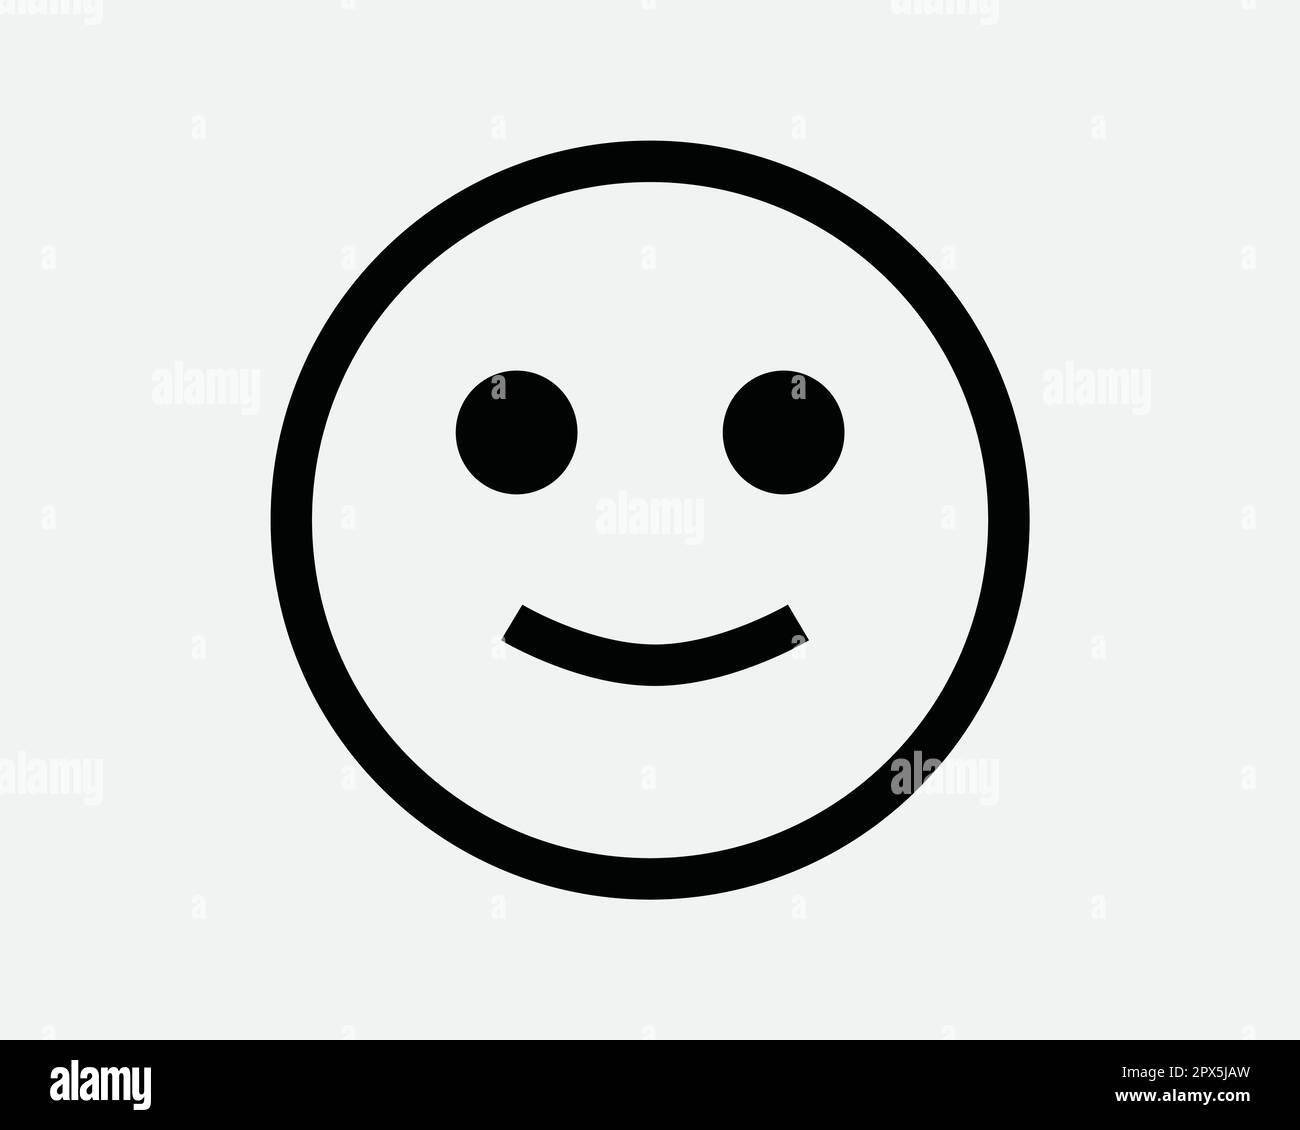 Smiley Face Line Icon. Smile Happy Joy Satisfied Emoji Symbol. Positive Delight Fun Emoticon Sign. Vector Graphic Illustration Clipart Cricut Cutout Stock Vector